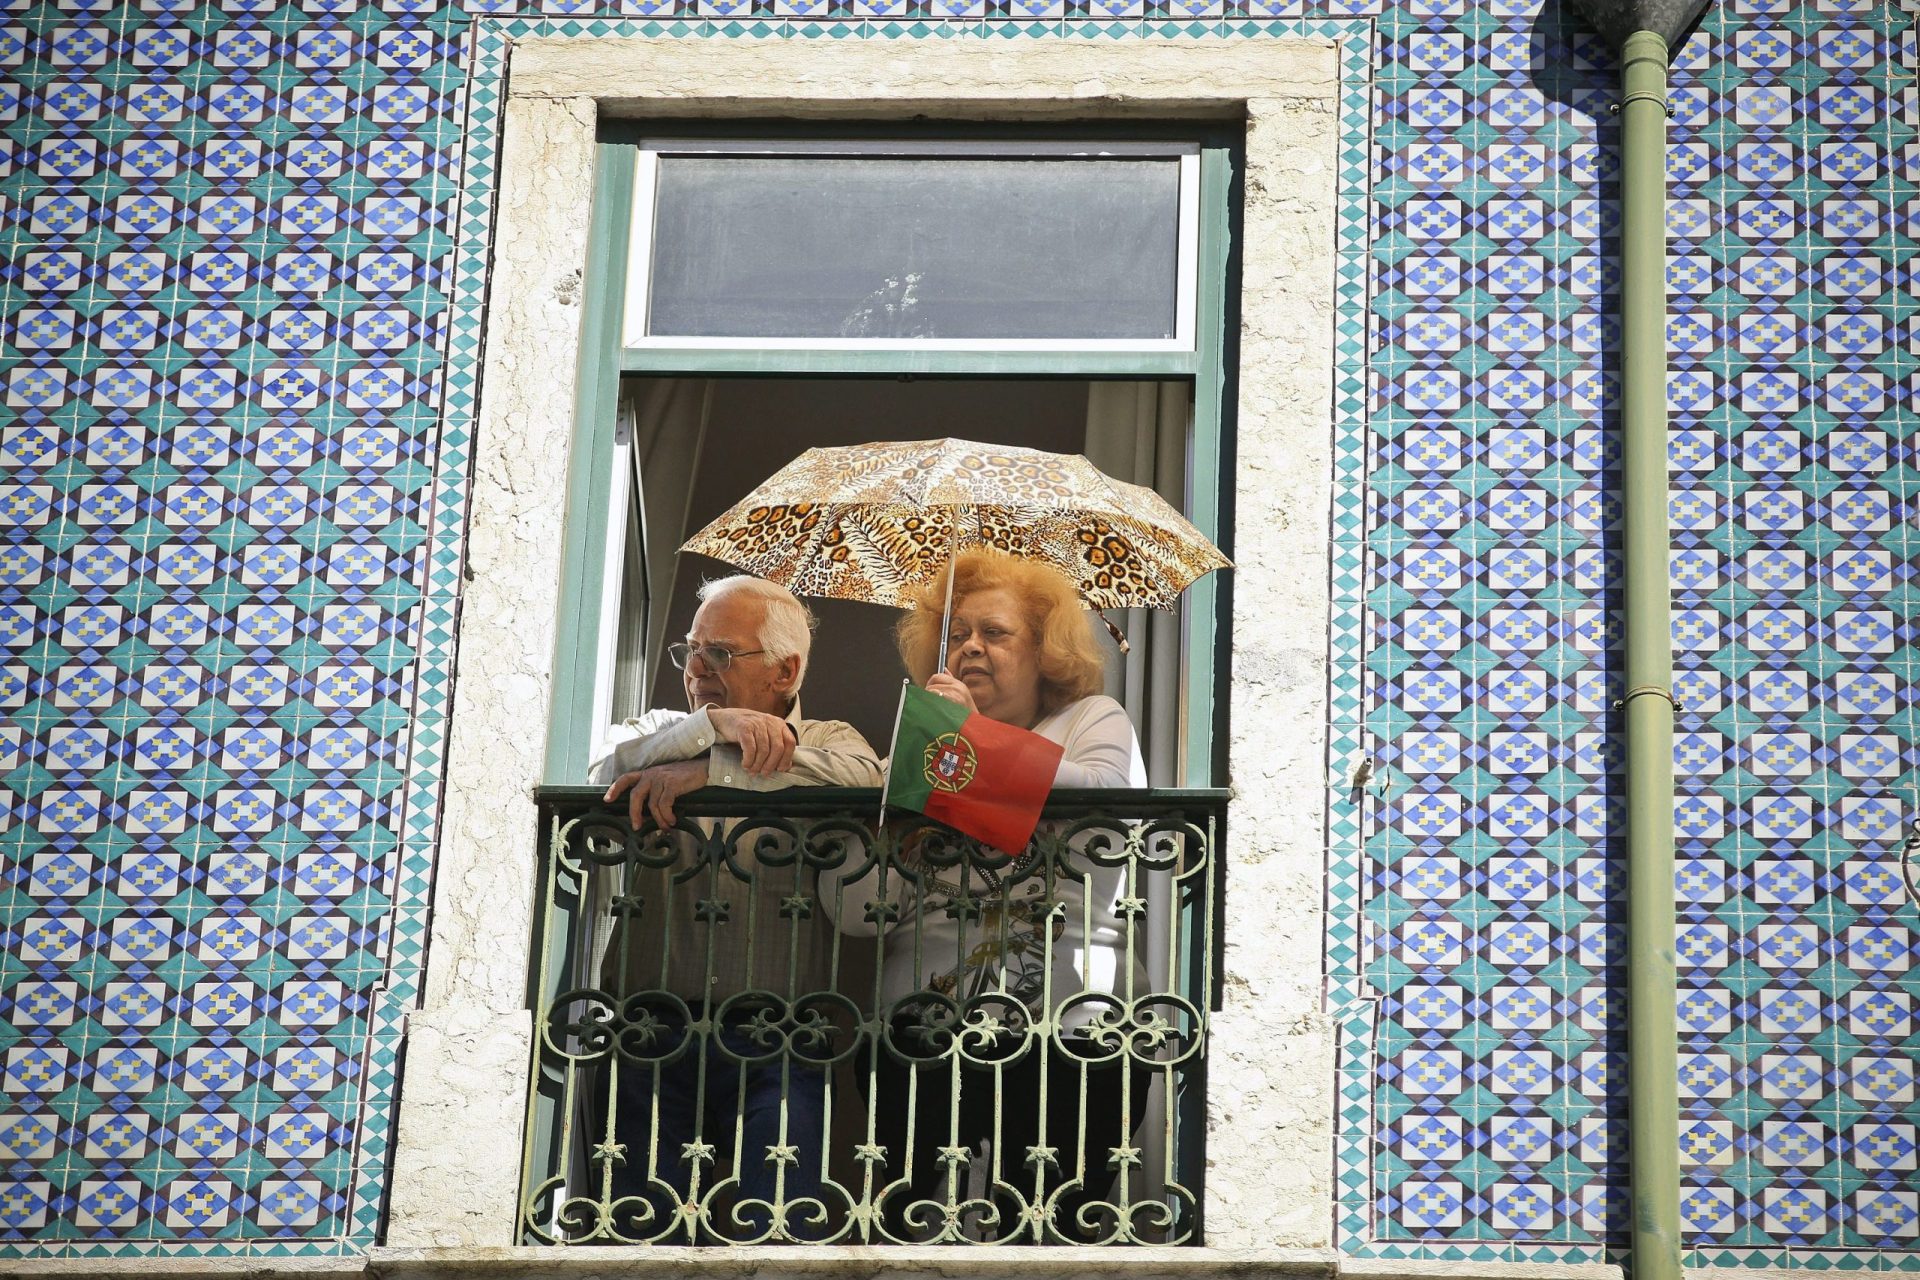 Quantos idosos haverá no Portugal de 2080?